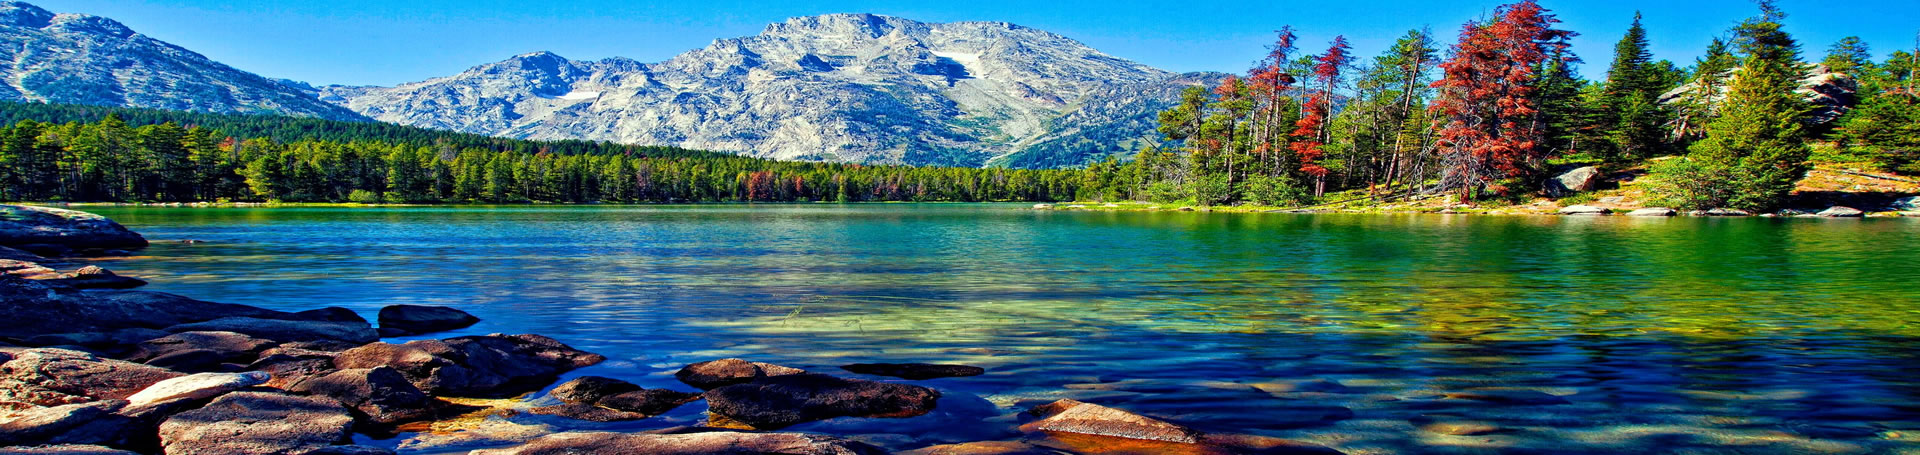 زیباترین دریاچه های جهان